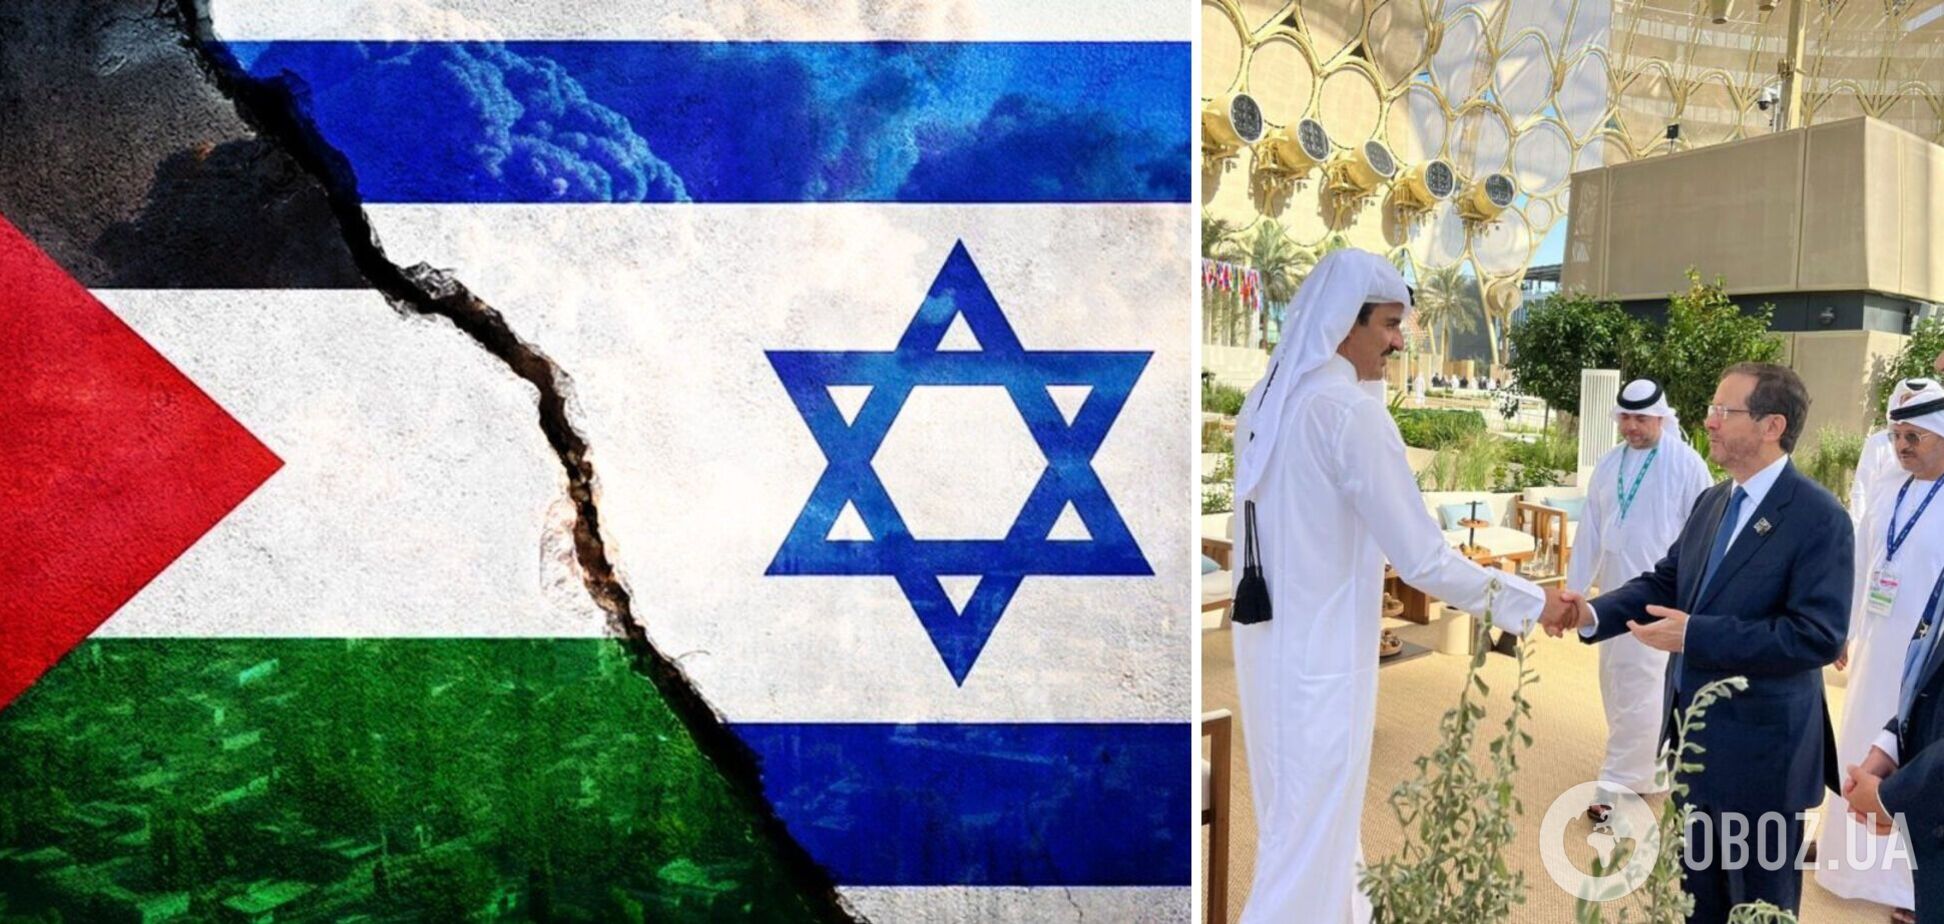 Переговоры с ХАМАС зашли в тупик: Израиль отозвал переговорную группу из Катара